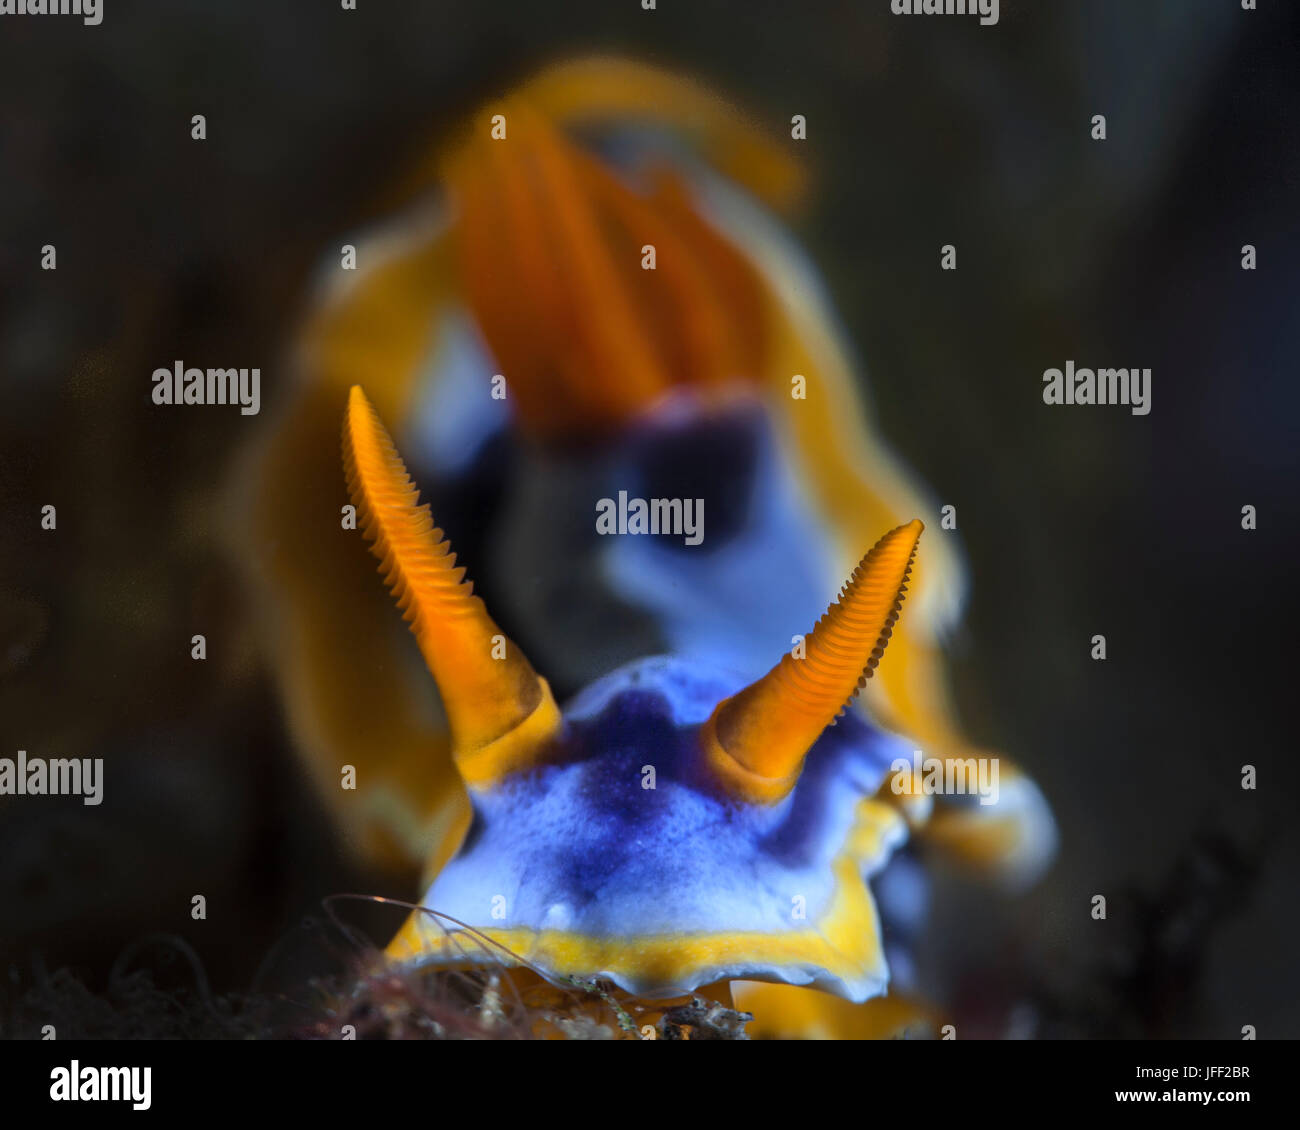 Super macro, chef-sur l'image du nudibranche Chromodoris annae critiques détails de ses rhinophores avec soft focus 'bokeh' image de branchies à l'arrière-plan Banque D'Images